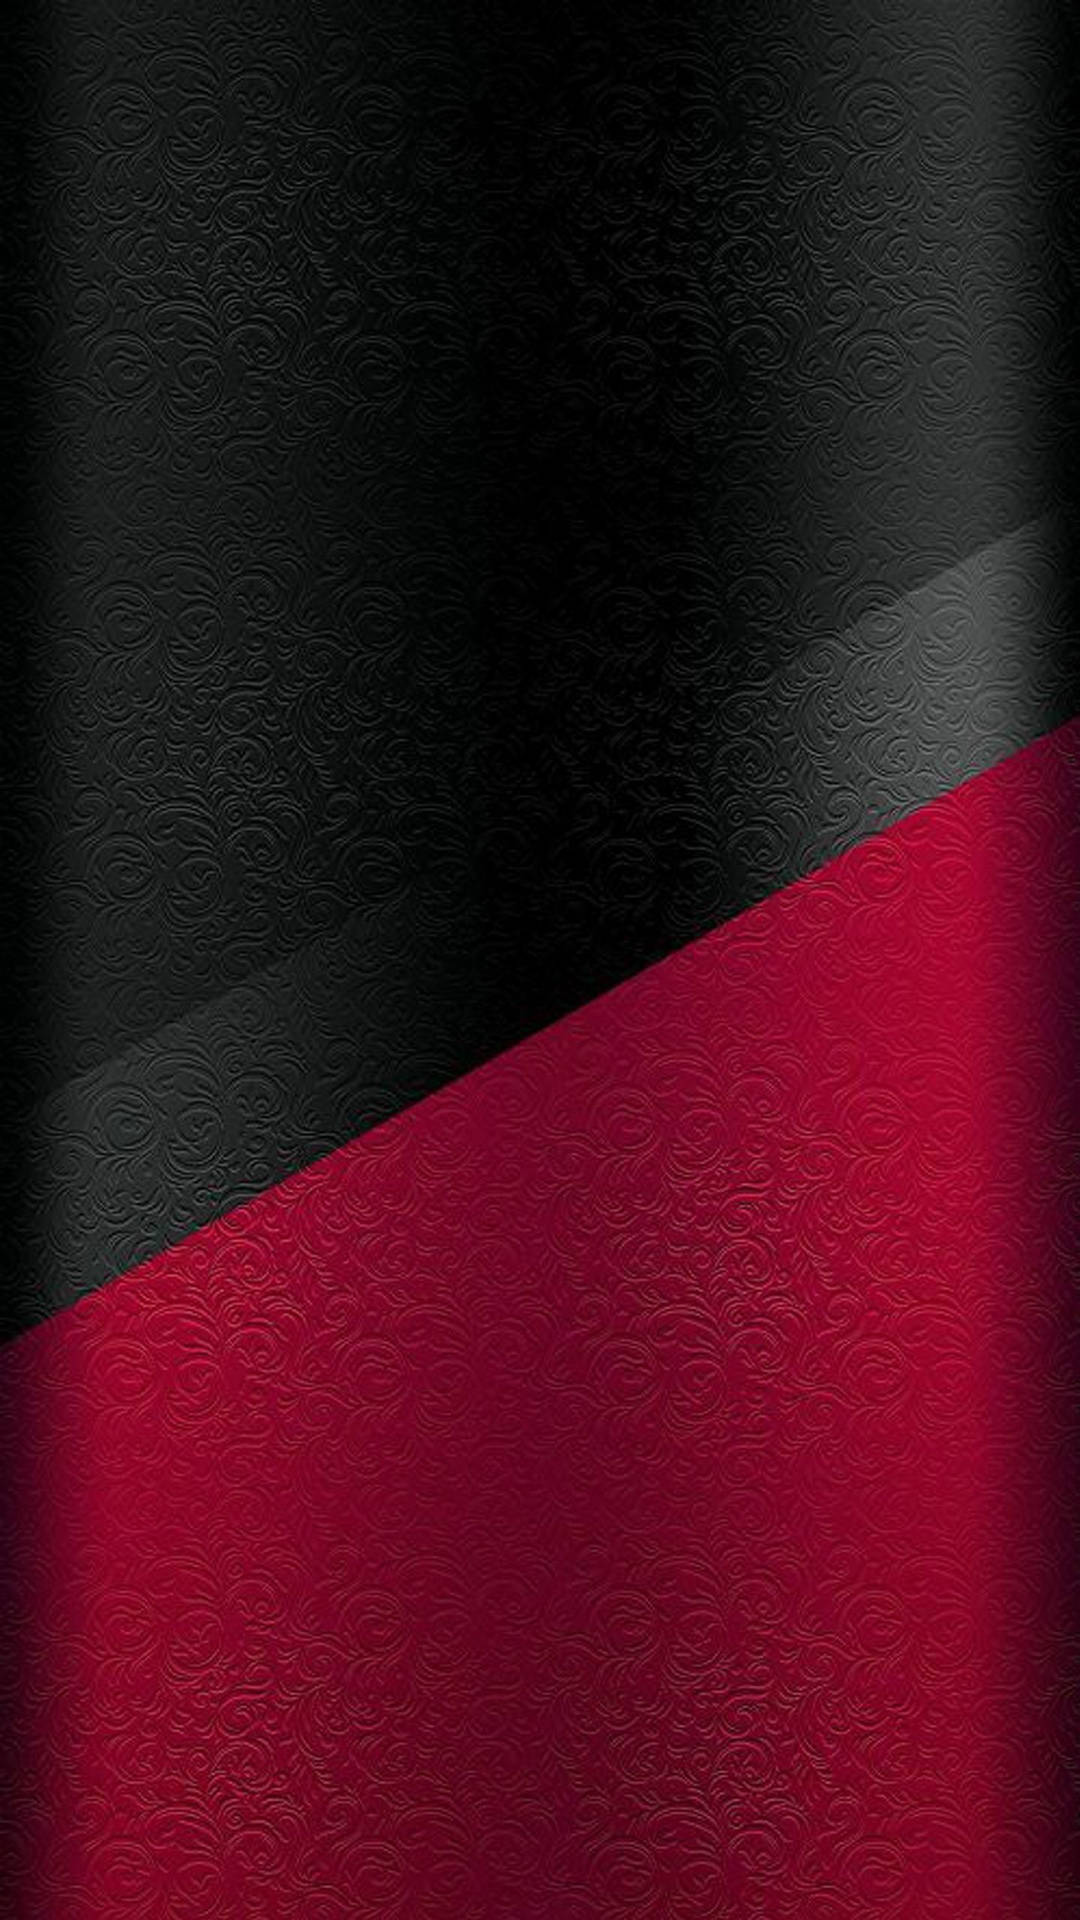 Halbrot, Halb Schwarz, Leder Iphone Wallpaper